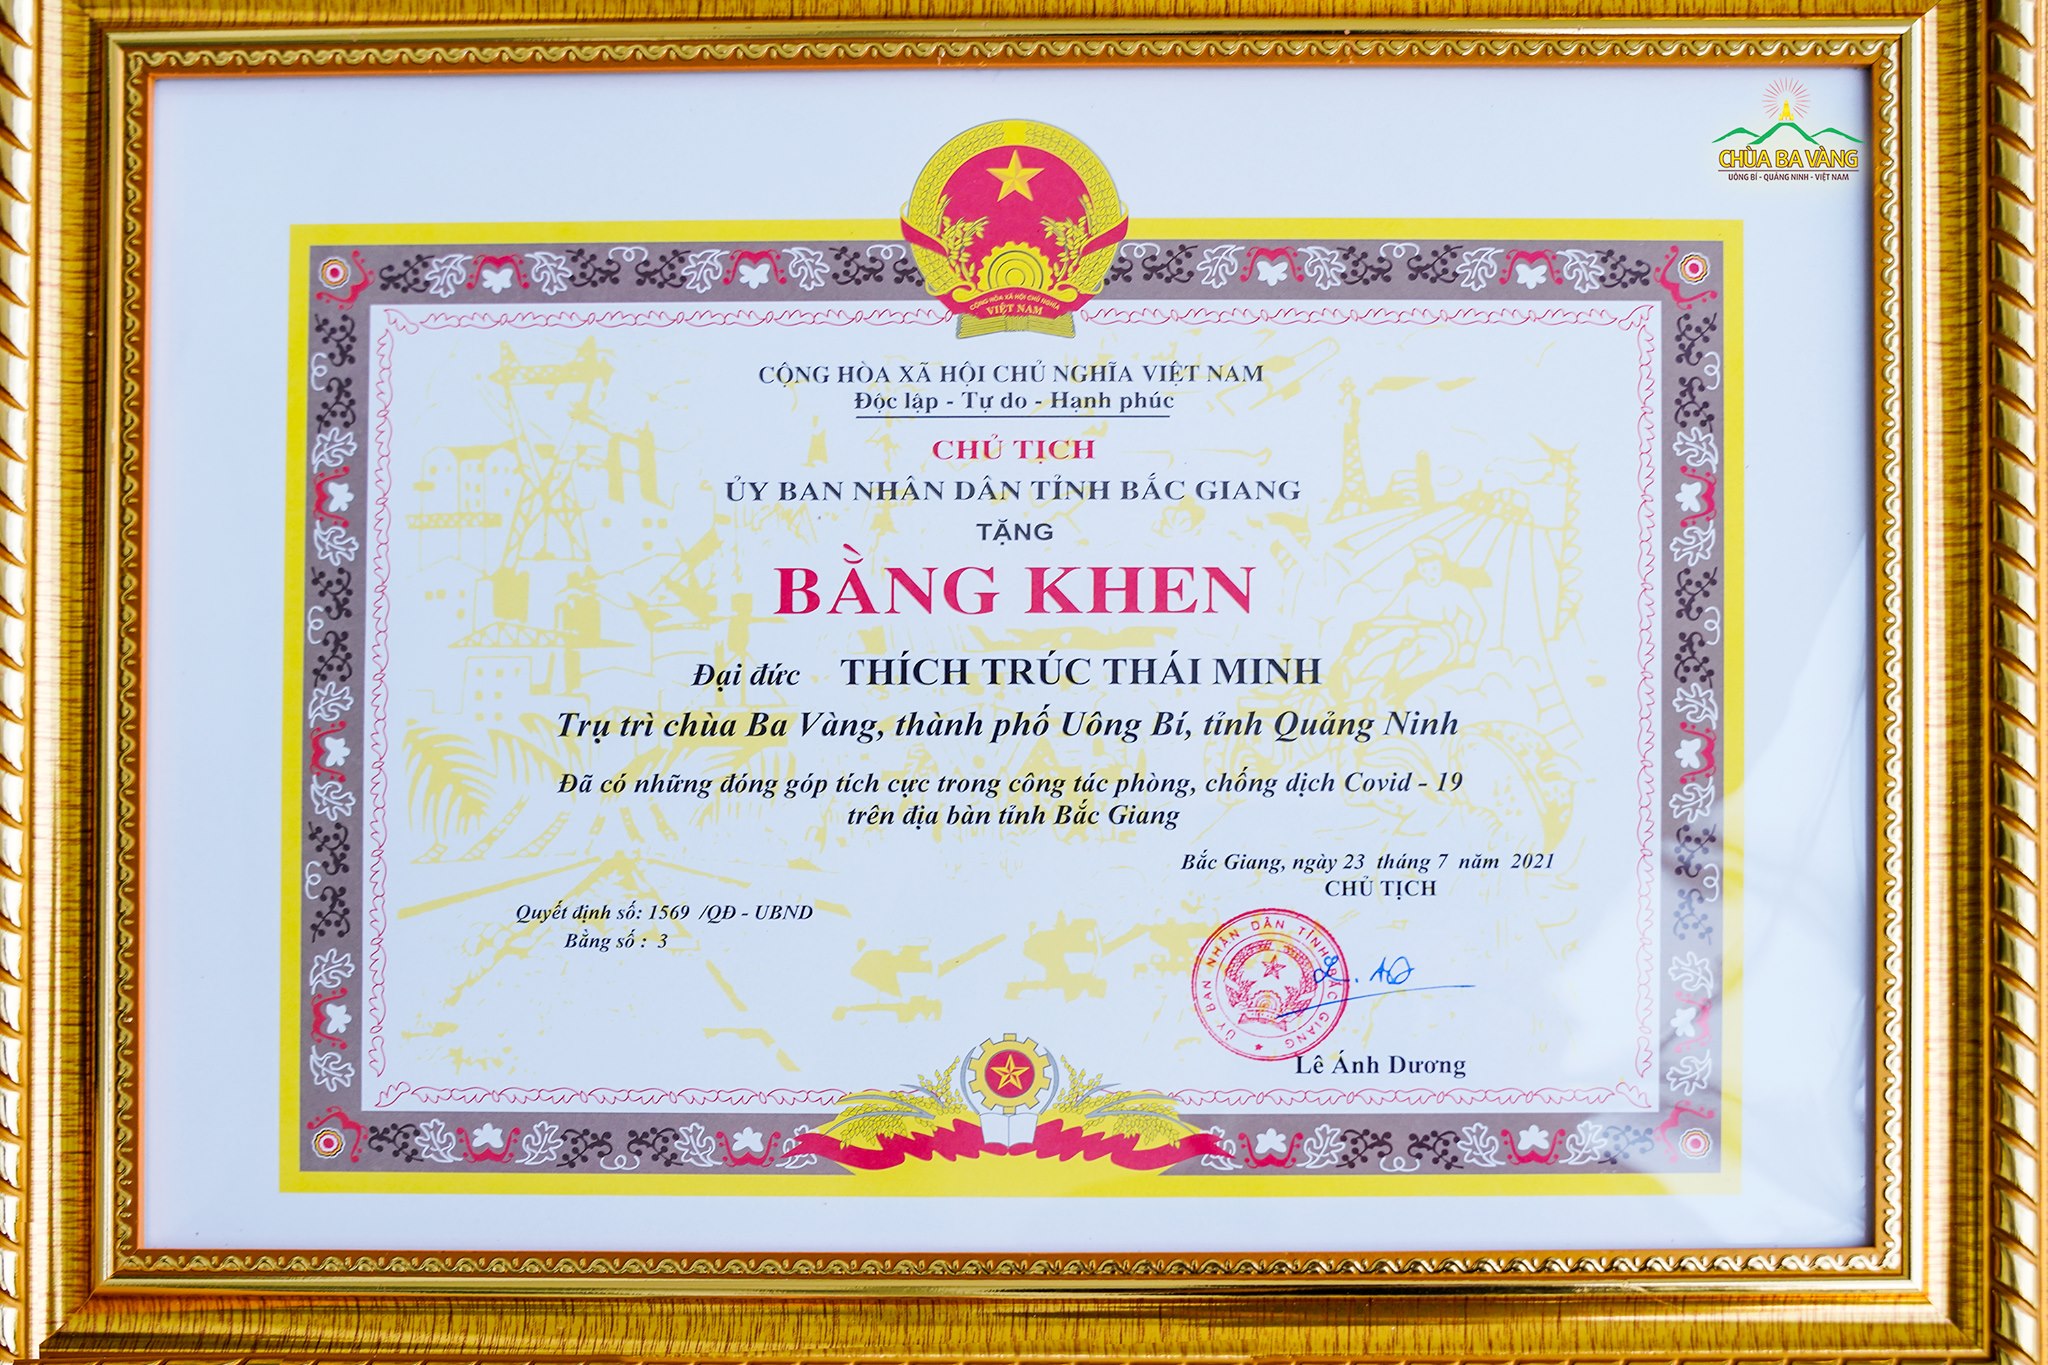 Bằng khen của Chủ tịch UBND tỉnh Bắc Giang trao tặng đến Sư Phụ Thích Trúc Thái Minh vì đã có những đóng góp thiết thực trong công tác phòng chống dịch trên địa bàn tỉnh